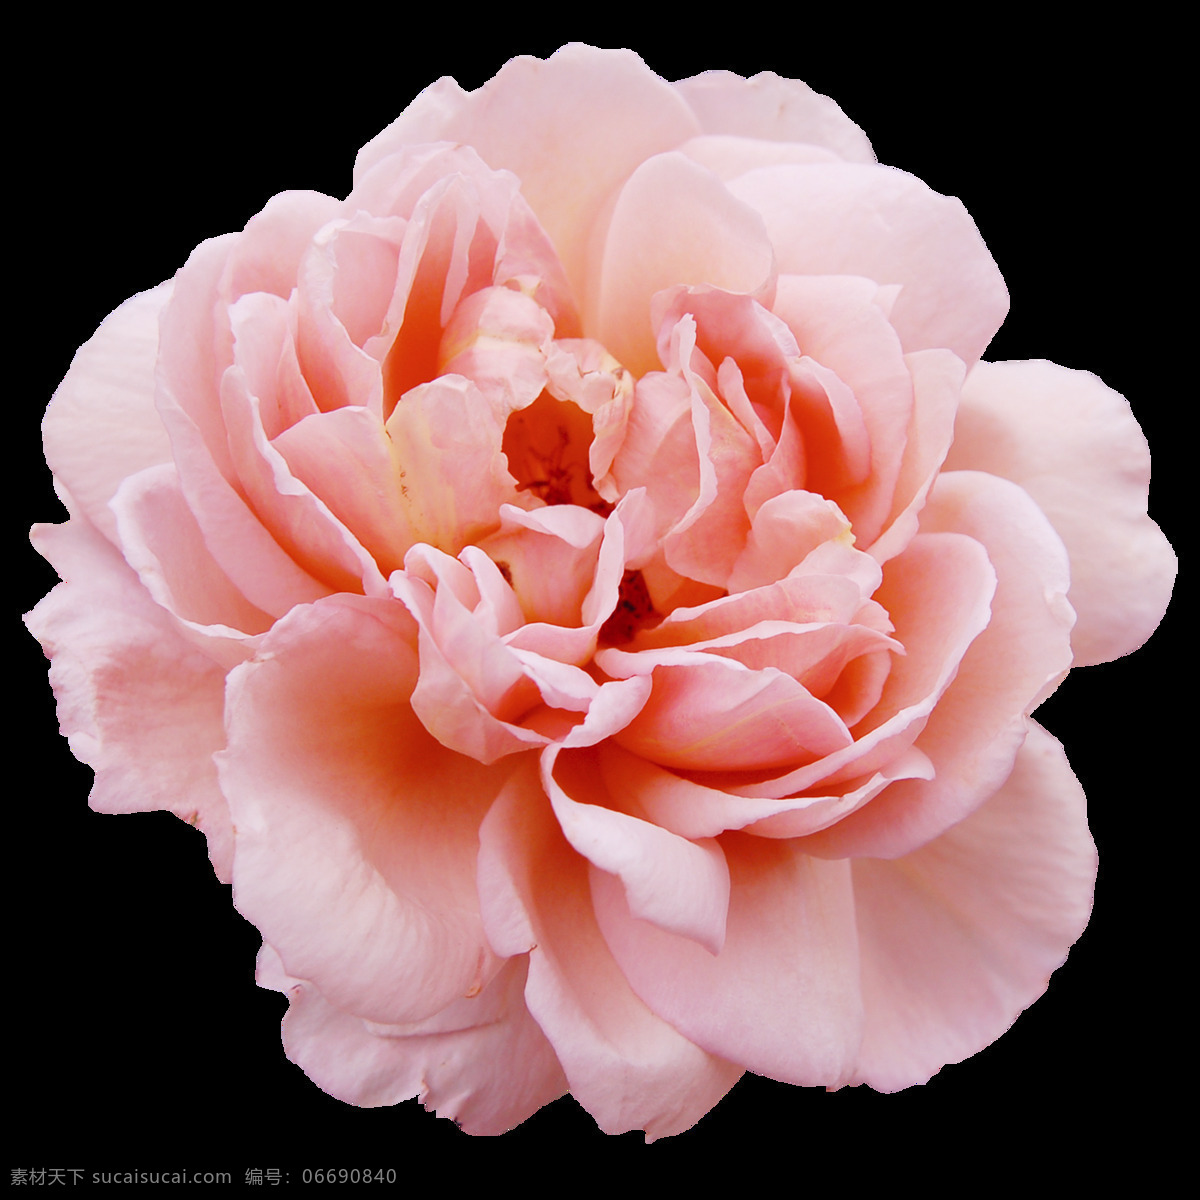 粉色 玫瑰 花朵 图案 玫瑰花 植物 情人节 鲜花 装饰